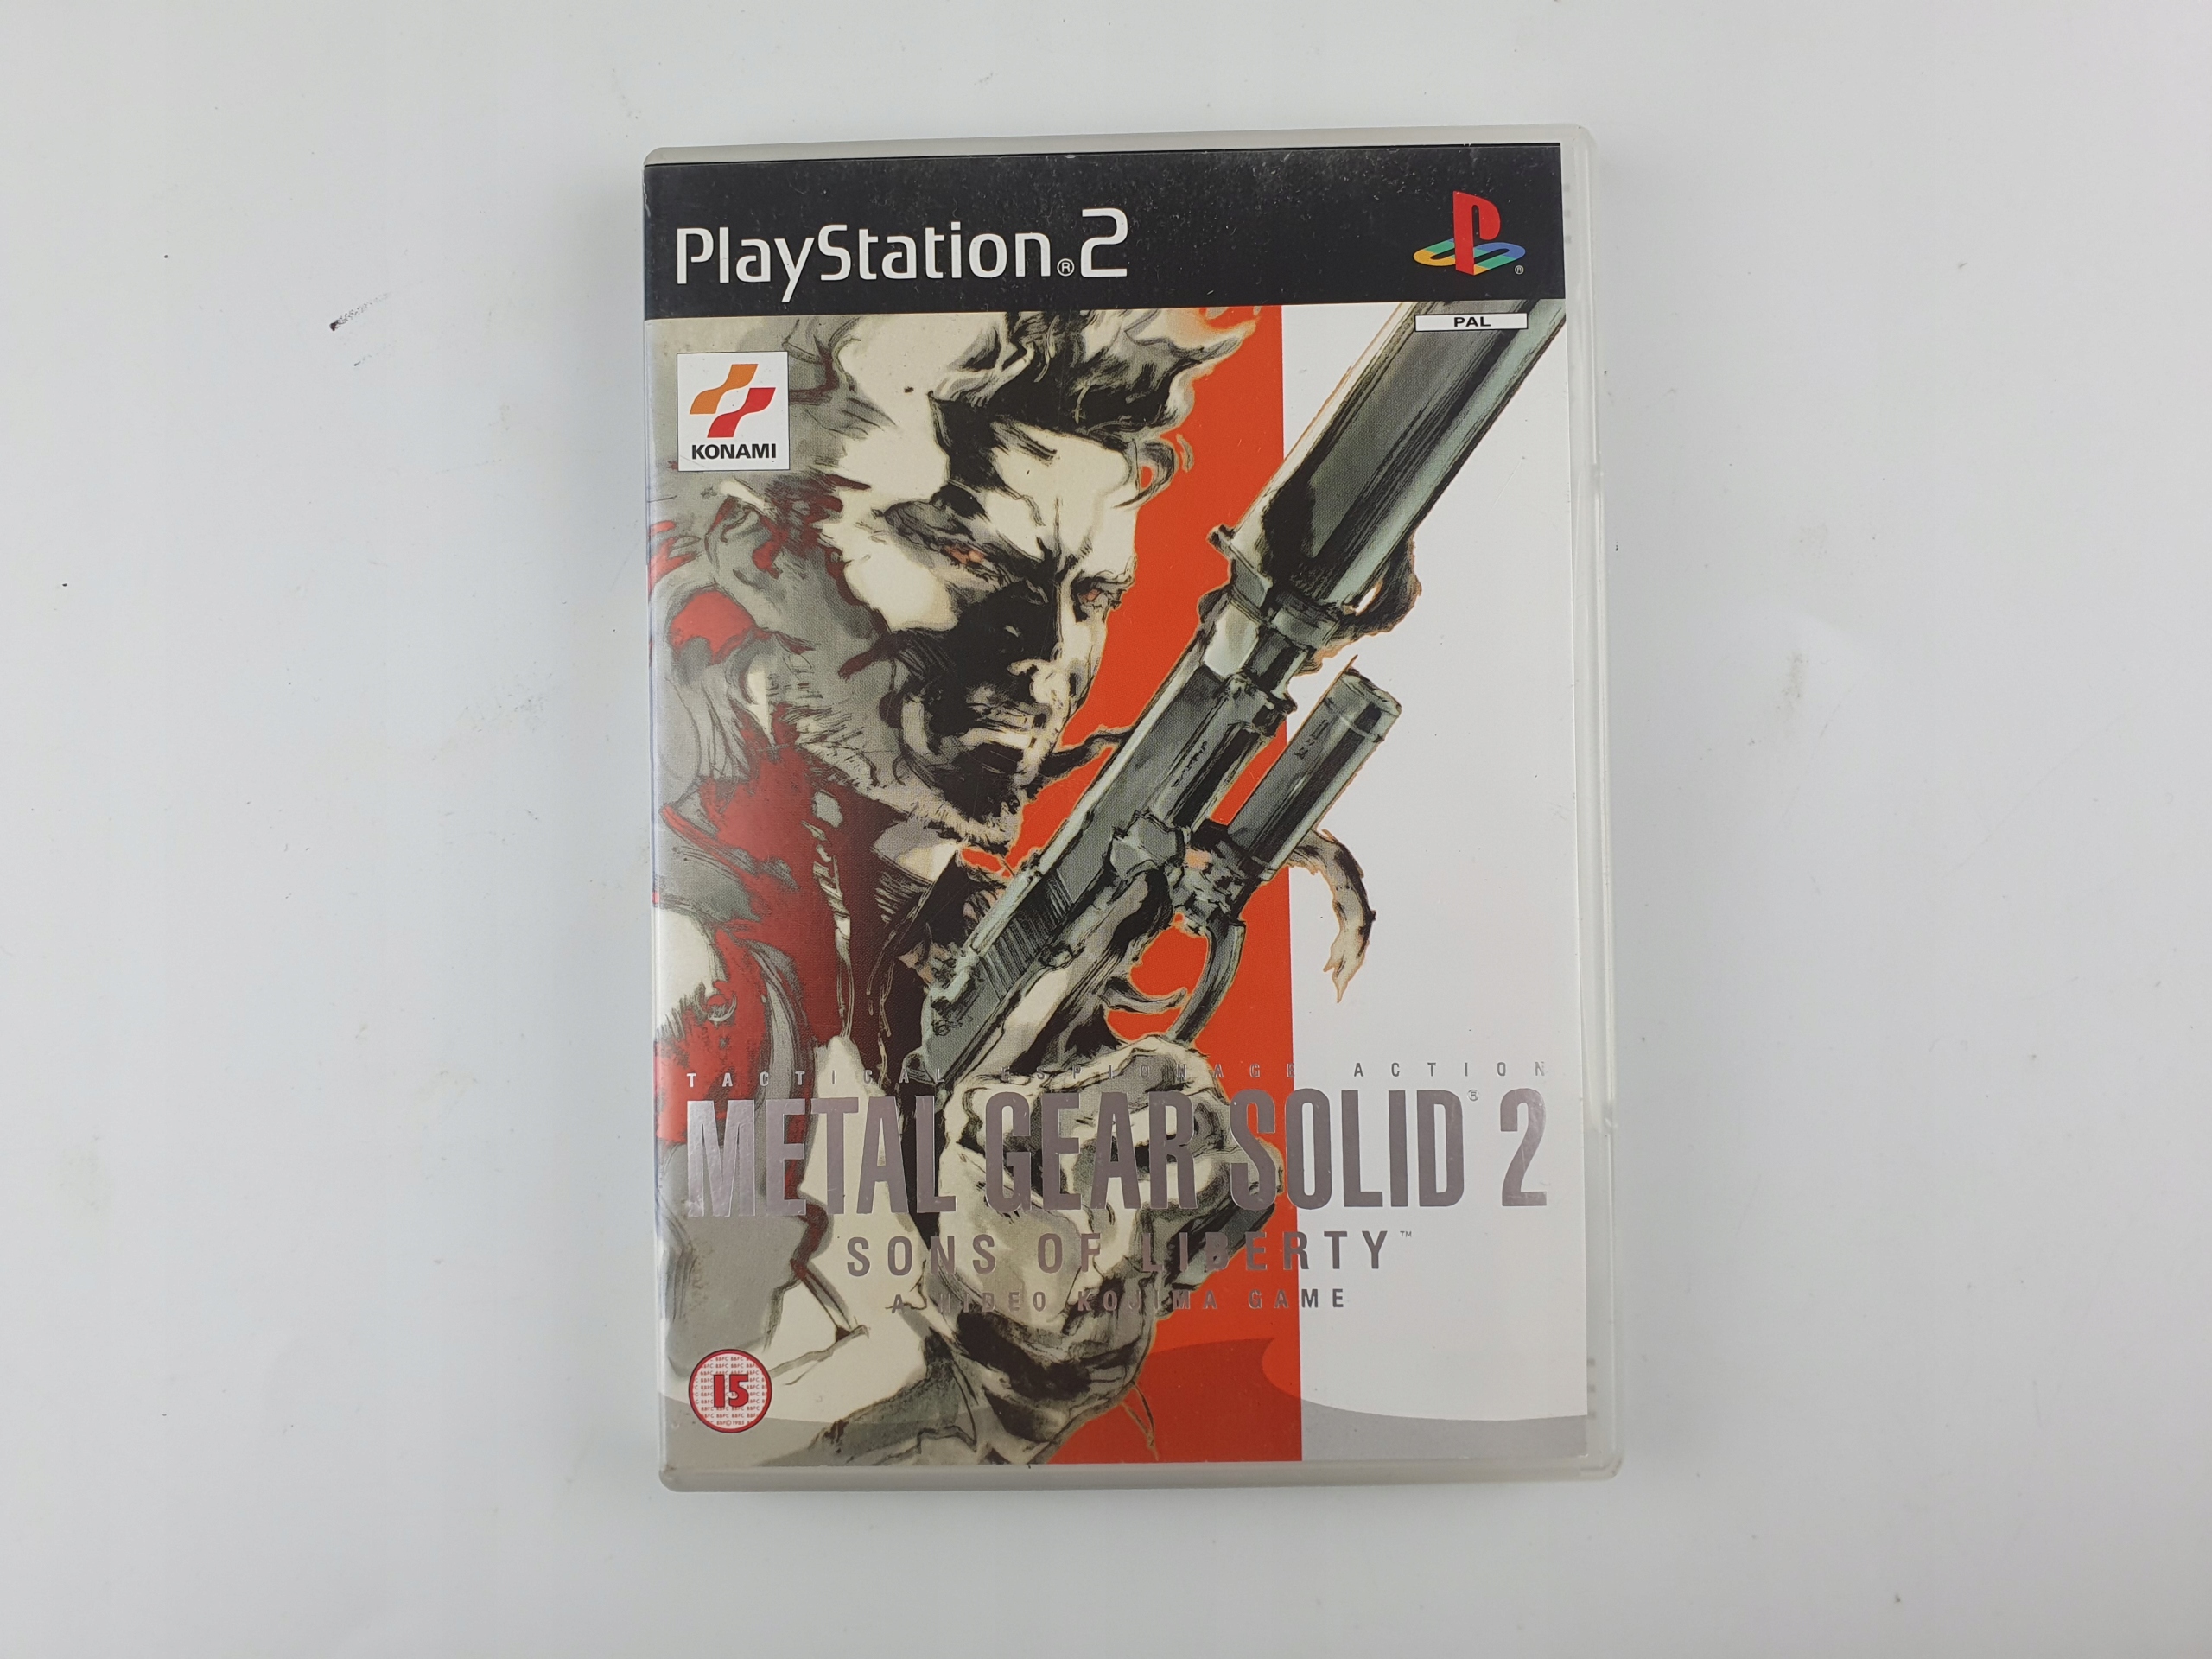 Gra Shellshock Nam '67 (używ.) Sony PlayStation 2 (PS2) - porównaj ceny 